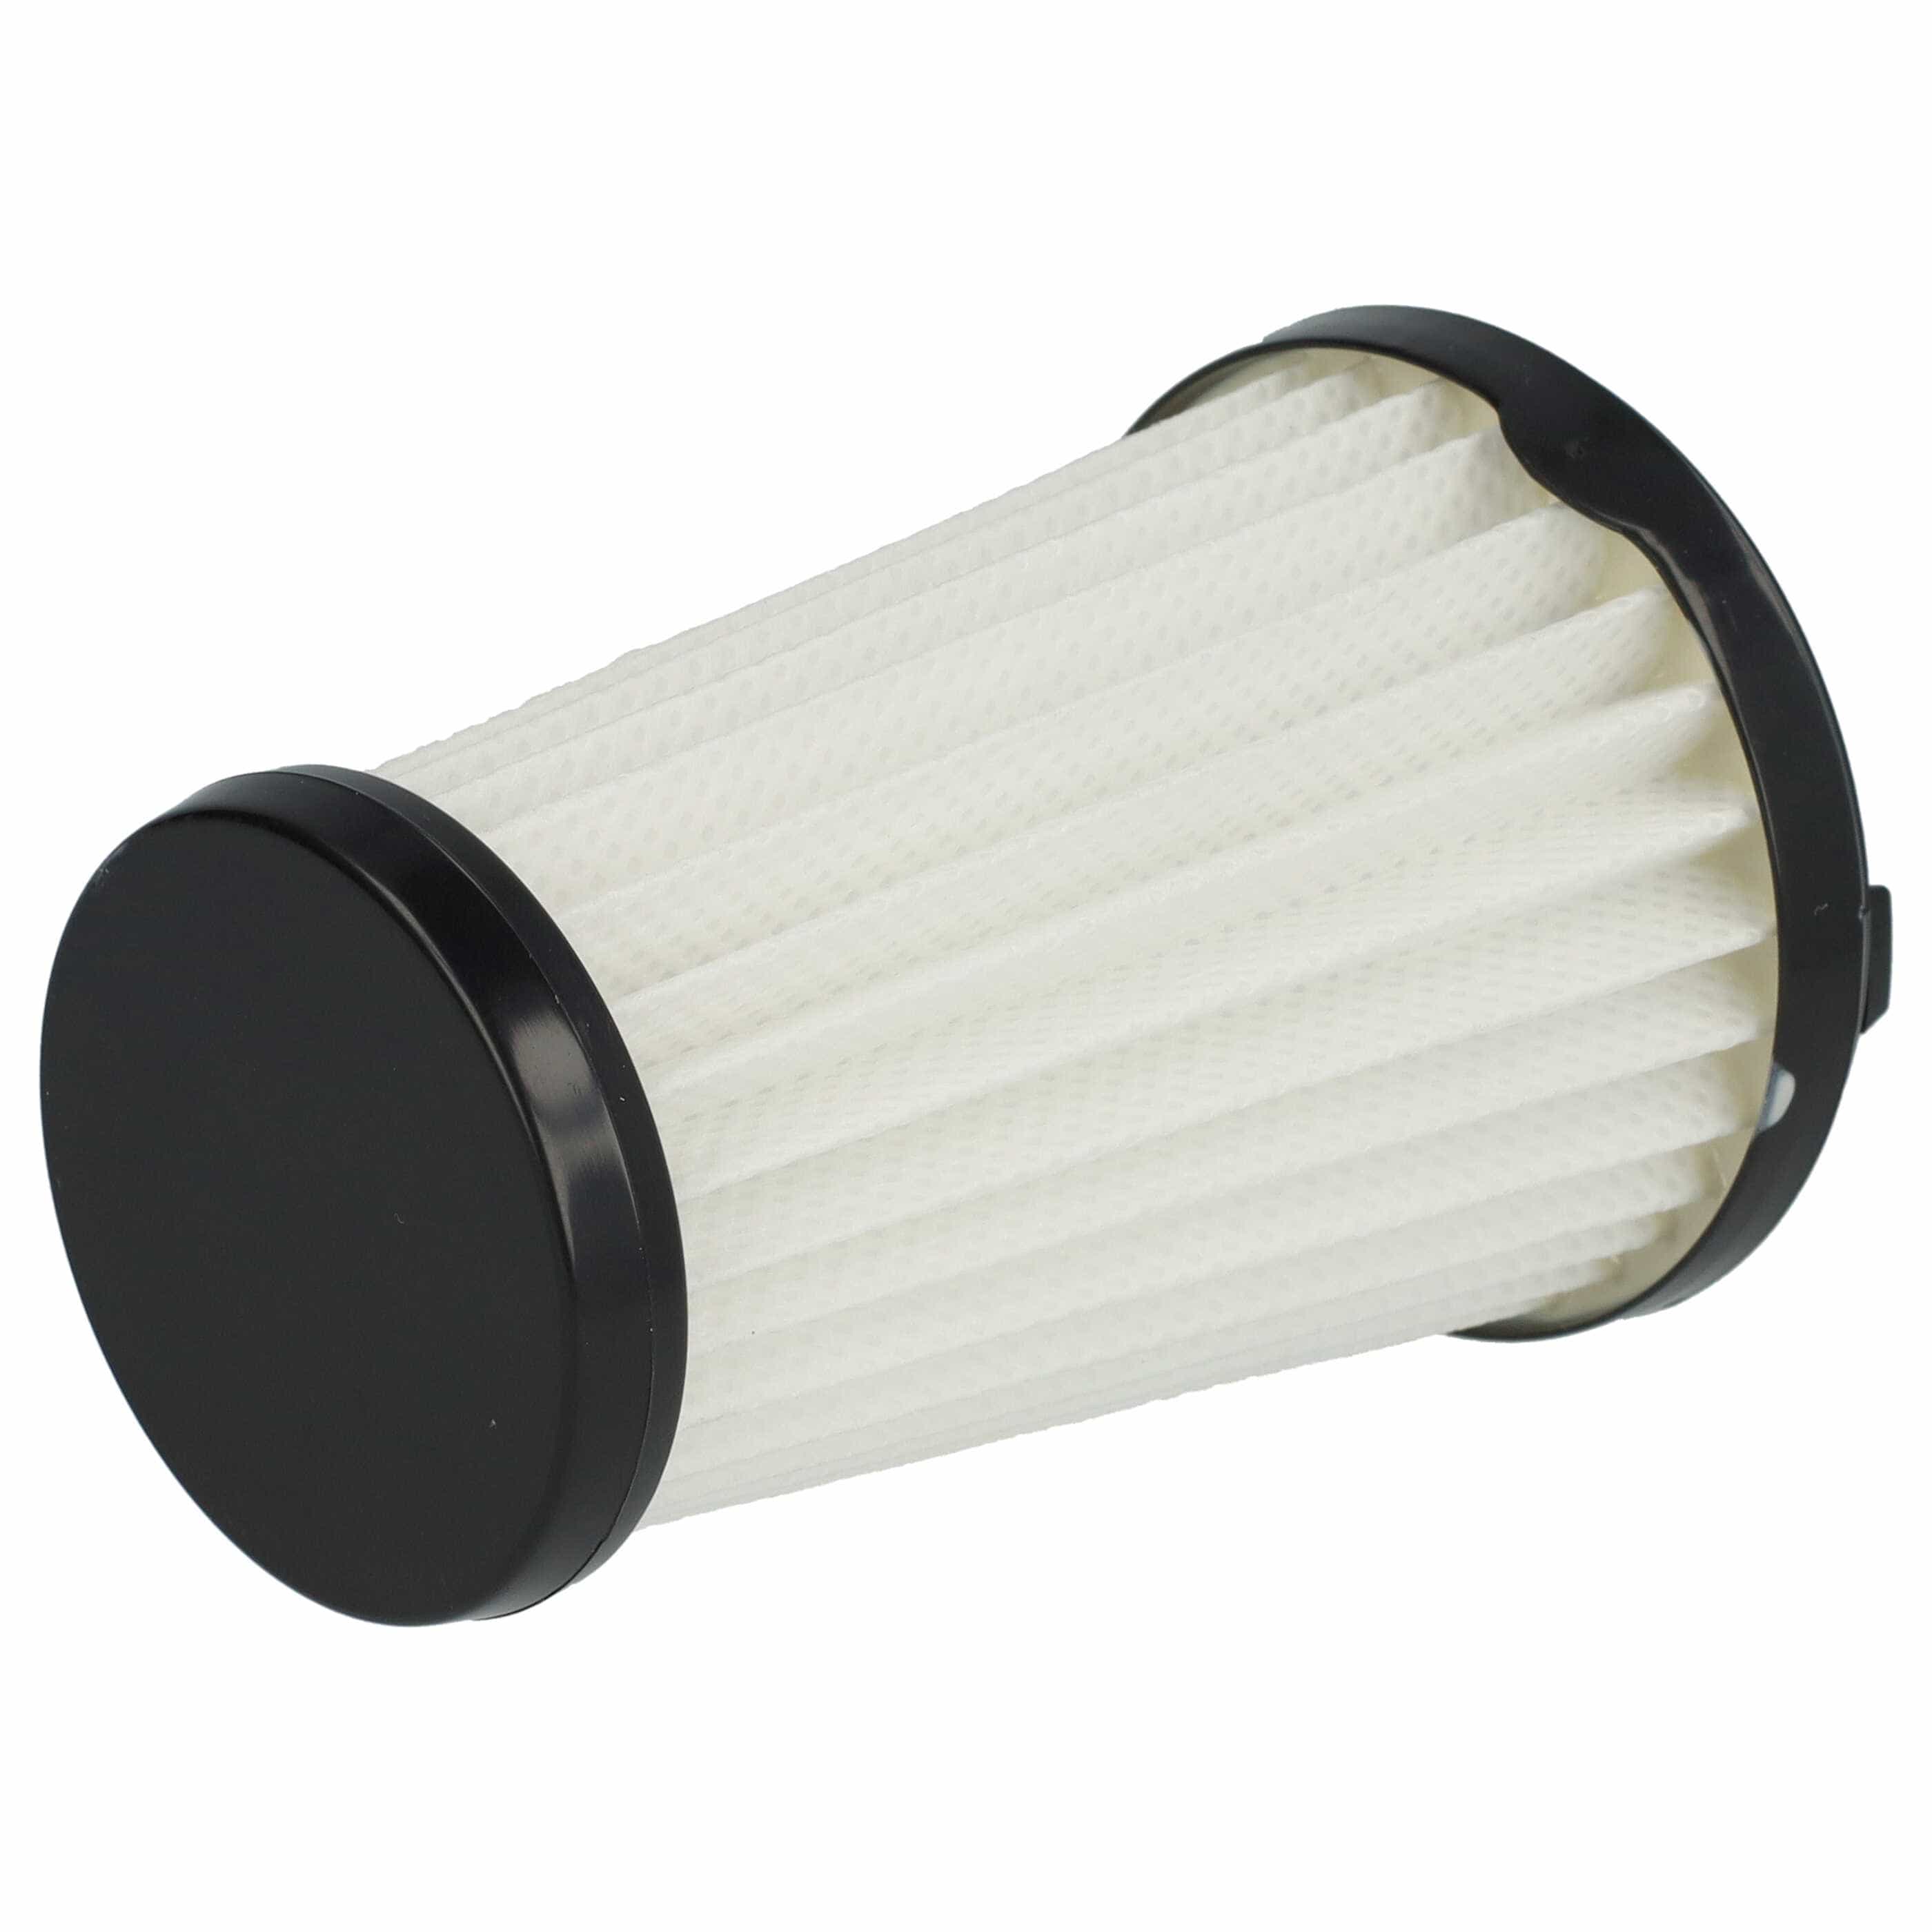 Filtro reemplaza AEG AEF150, 9001683755, 90094073100 para aspiradora - filtro laminar, negro / blanco